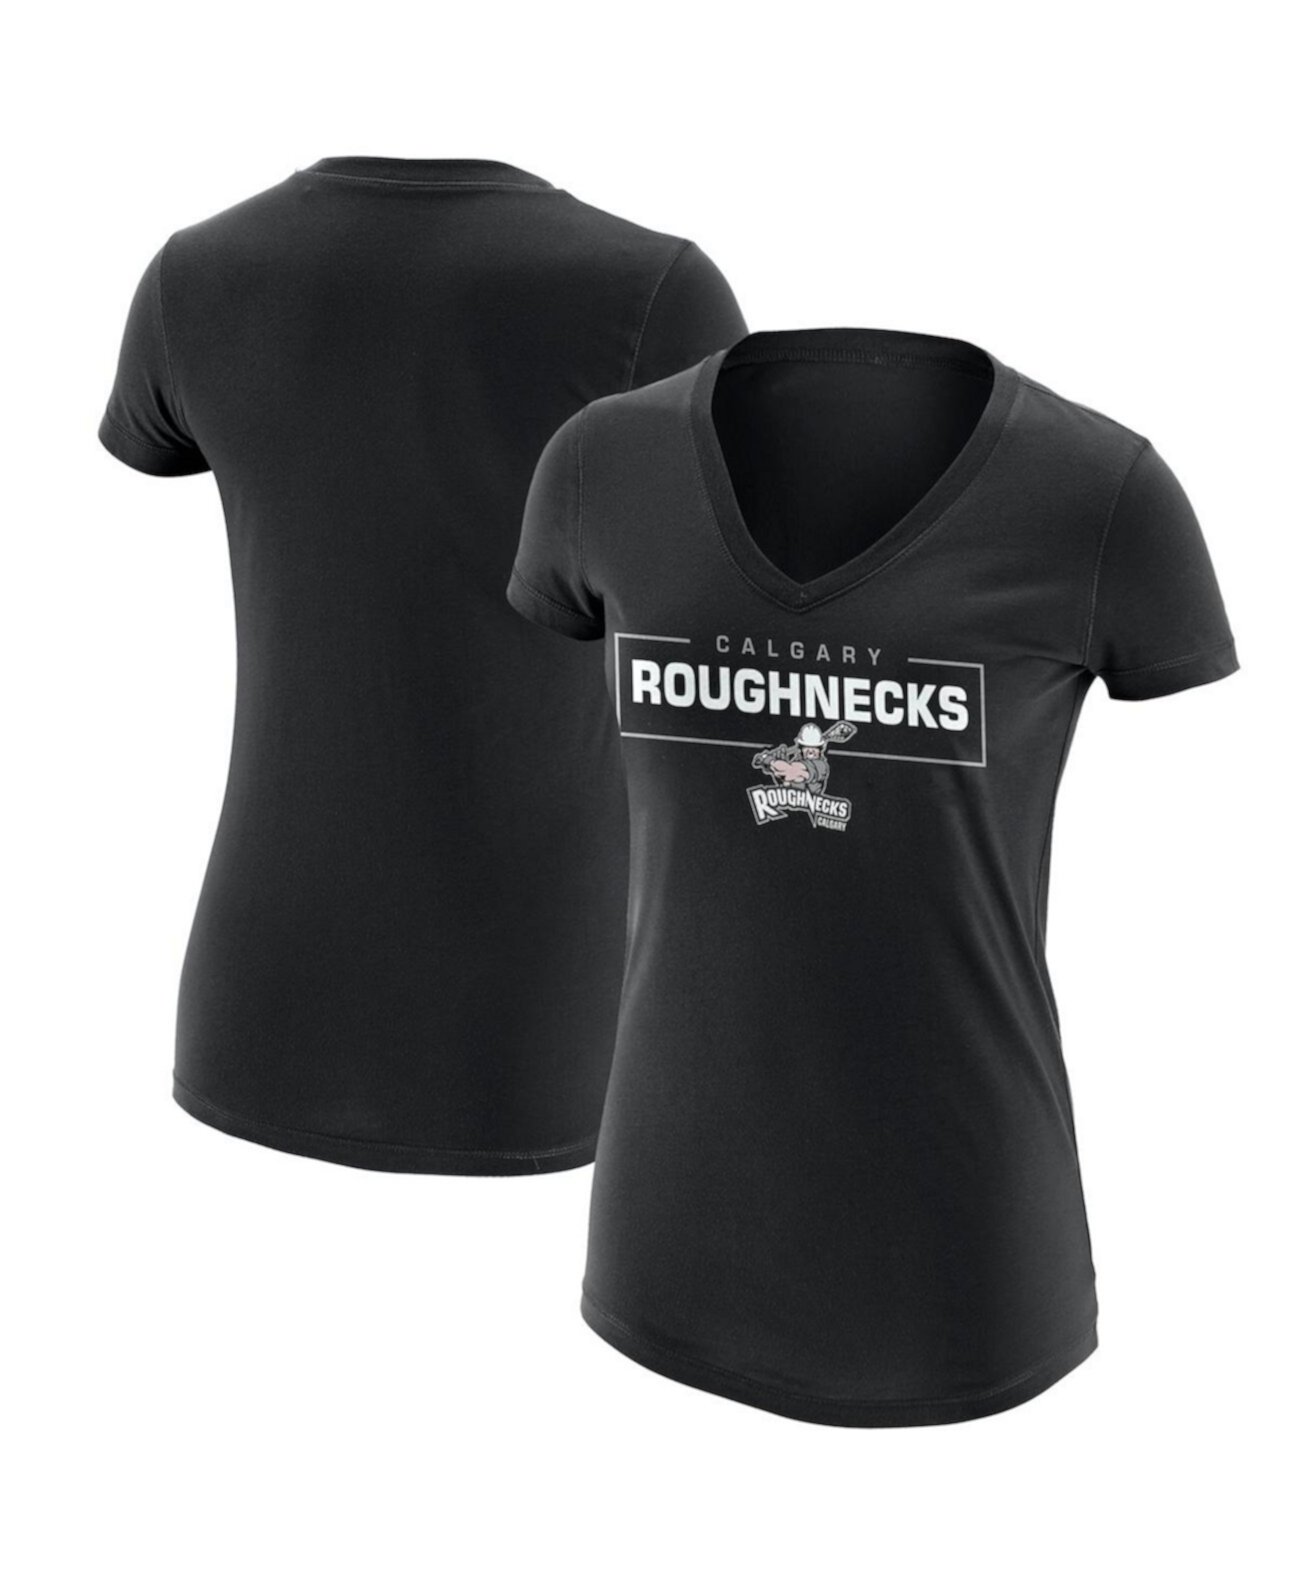 Черная женская футболка с v-образным вырезом и логотипом Calgary Roughnecks Primary ADPRO Sports